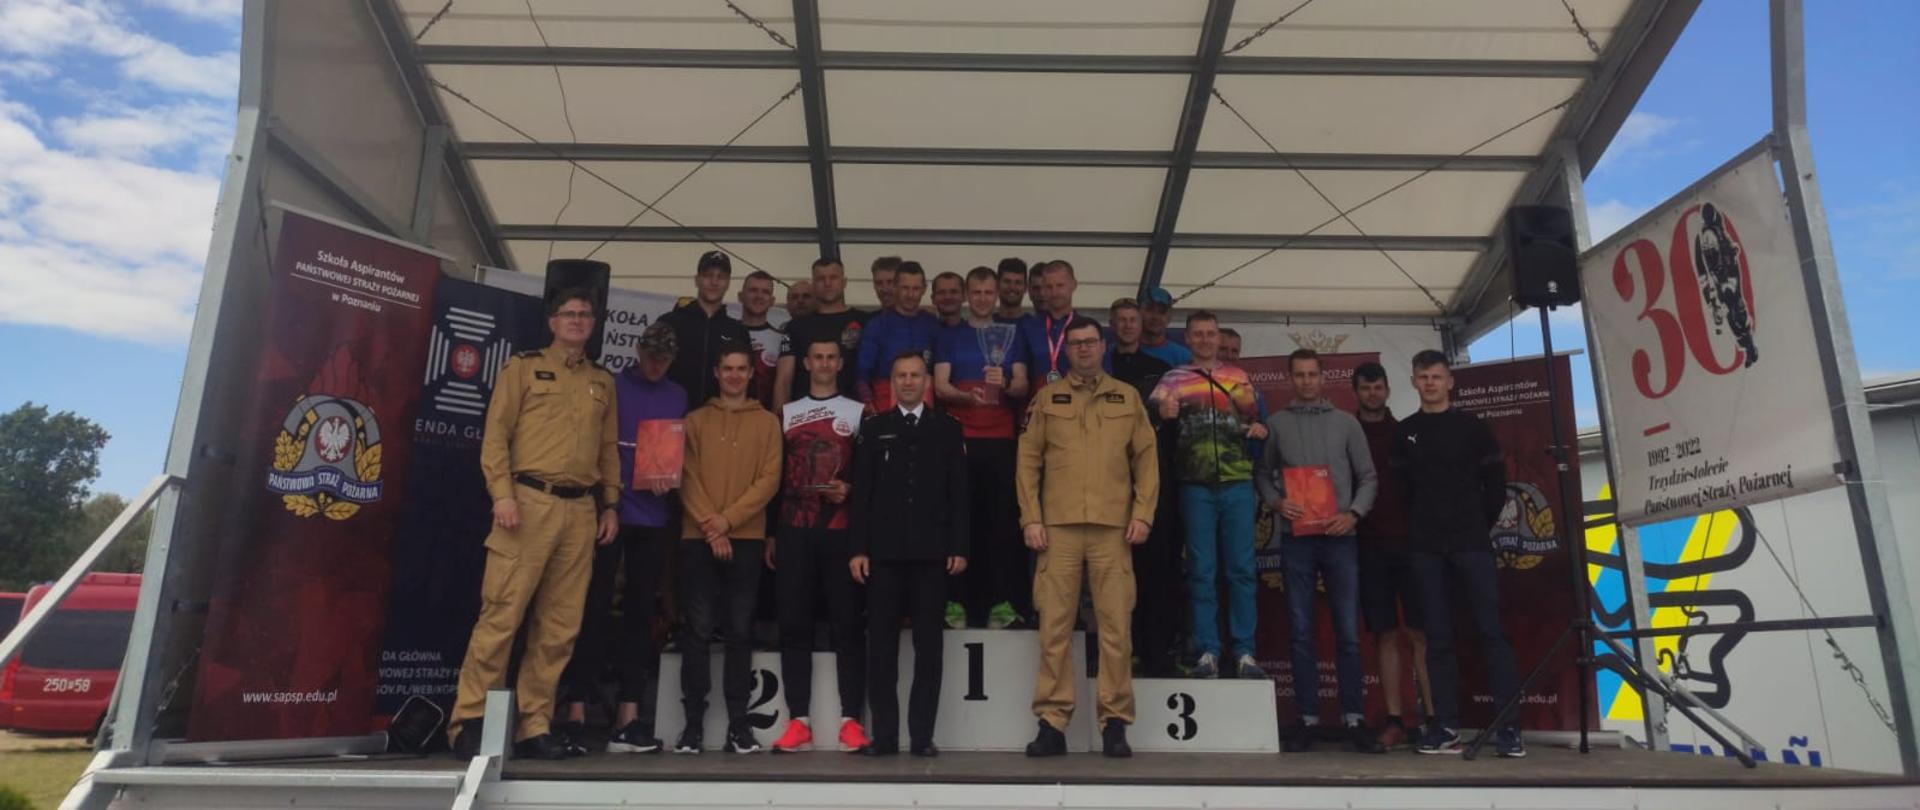 Uczestnicy wygranych zawodów 30 kilometrów na 30-lecie Państwowej Straży Pożarnej na podium